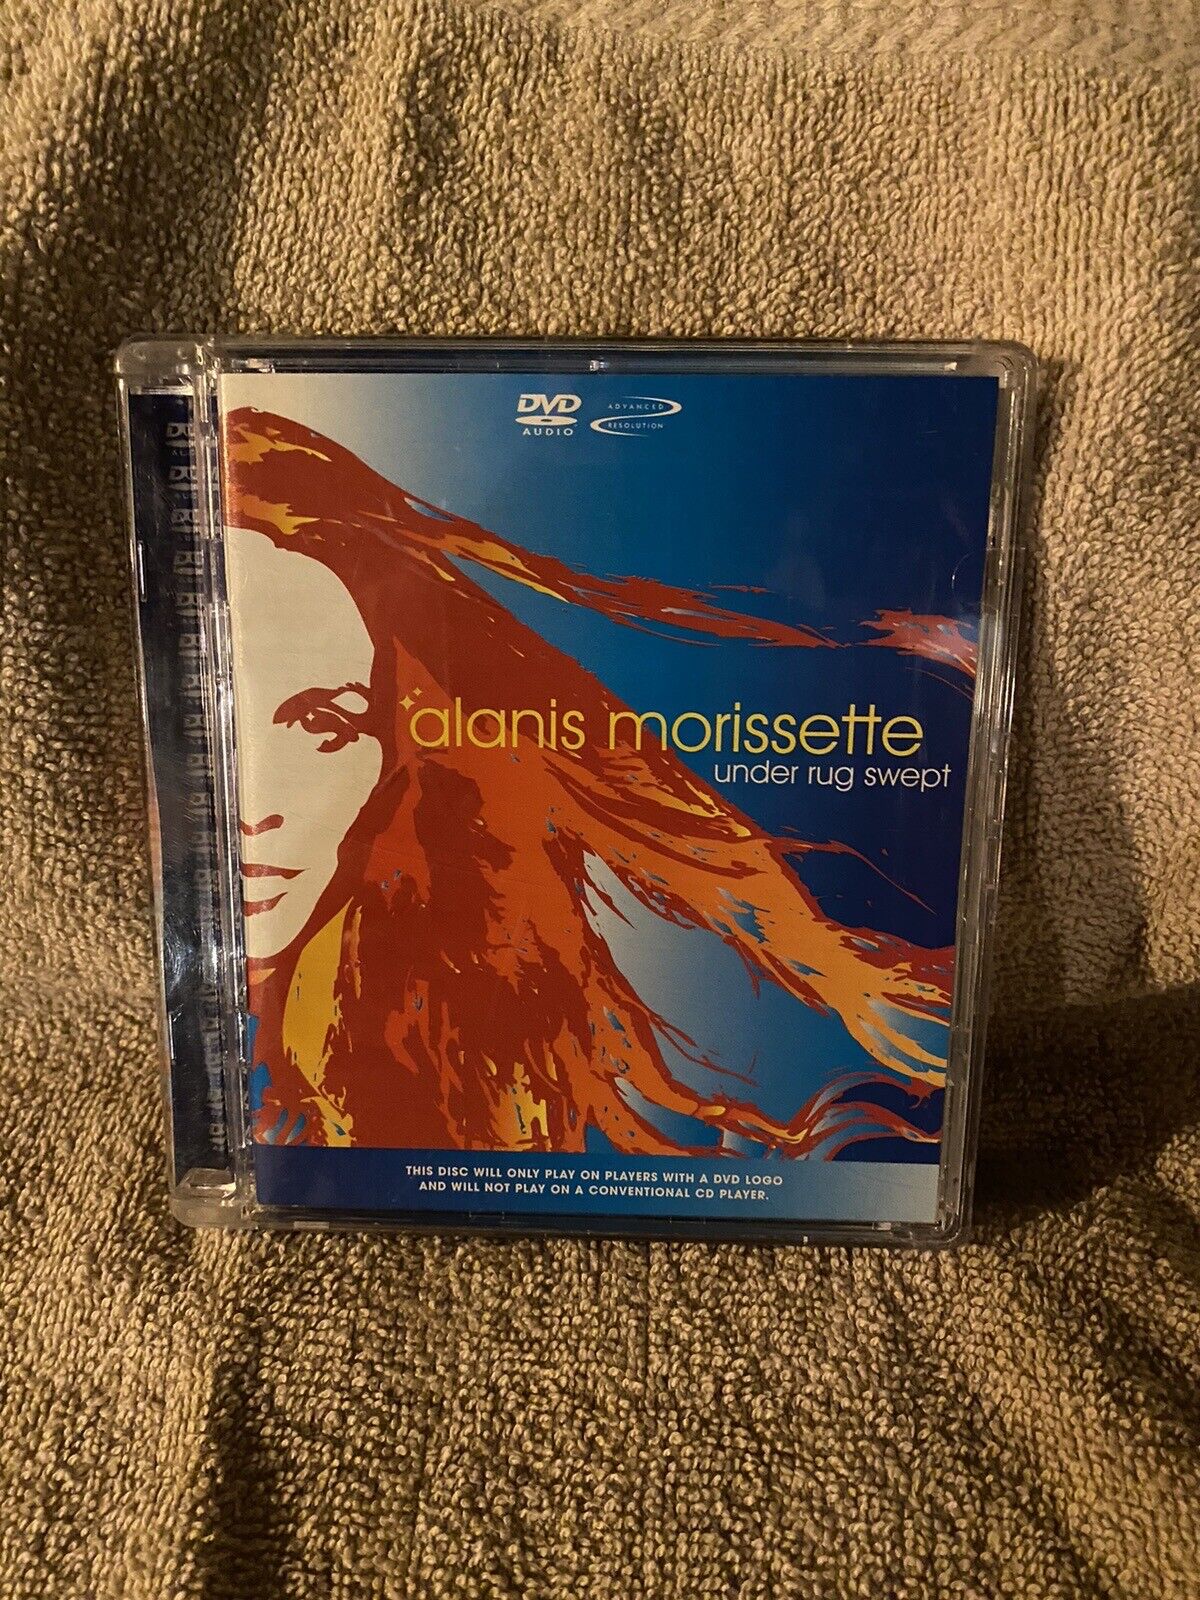 Alanis Morissette- Under Swept Rug- Dvd-audio disc